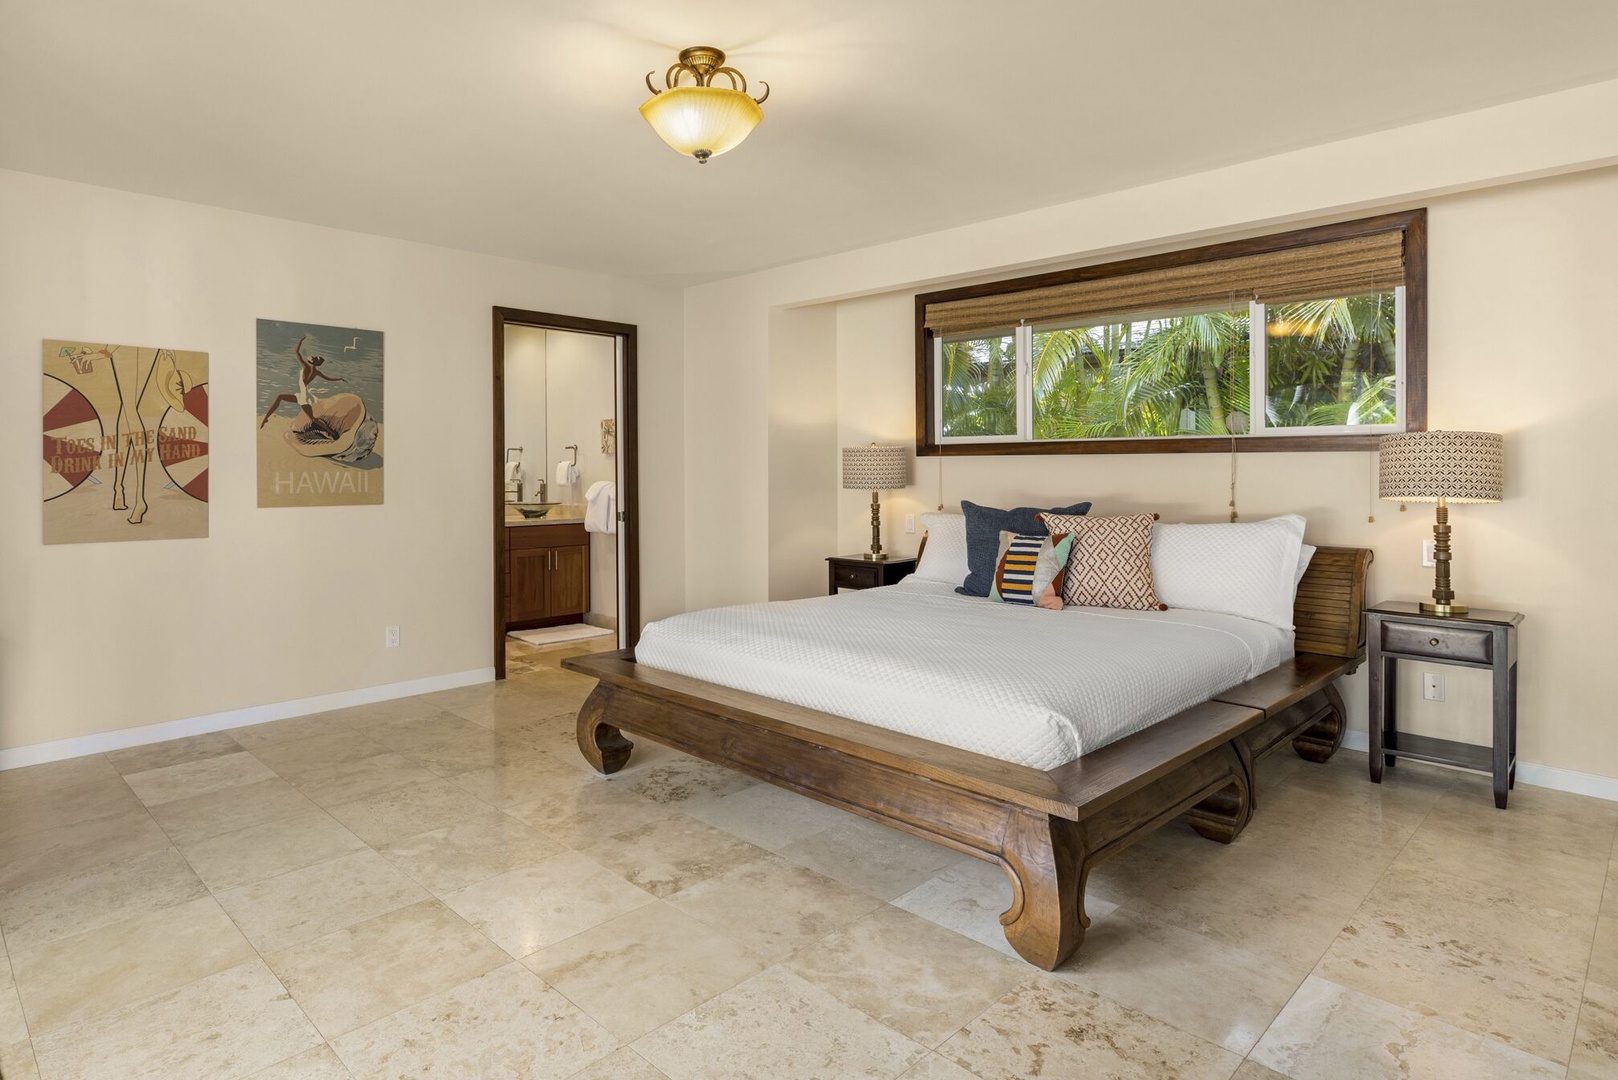 Honolulu Vacation Rentals, Kahala Breeze - Second primary bedroom.